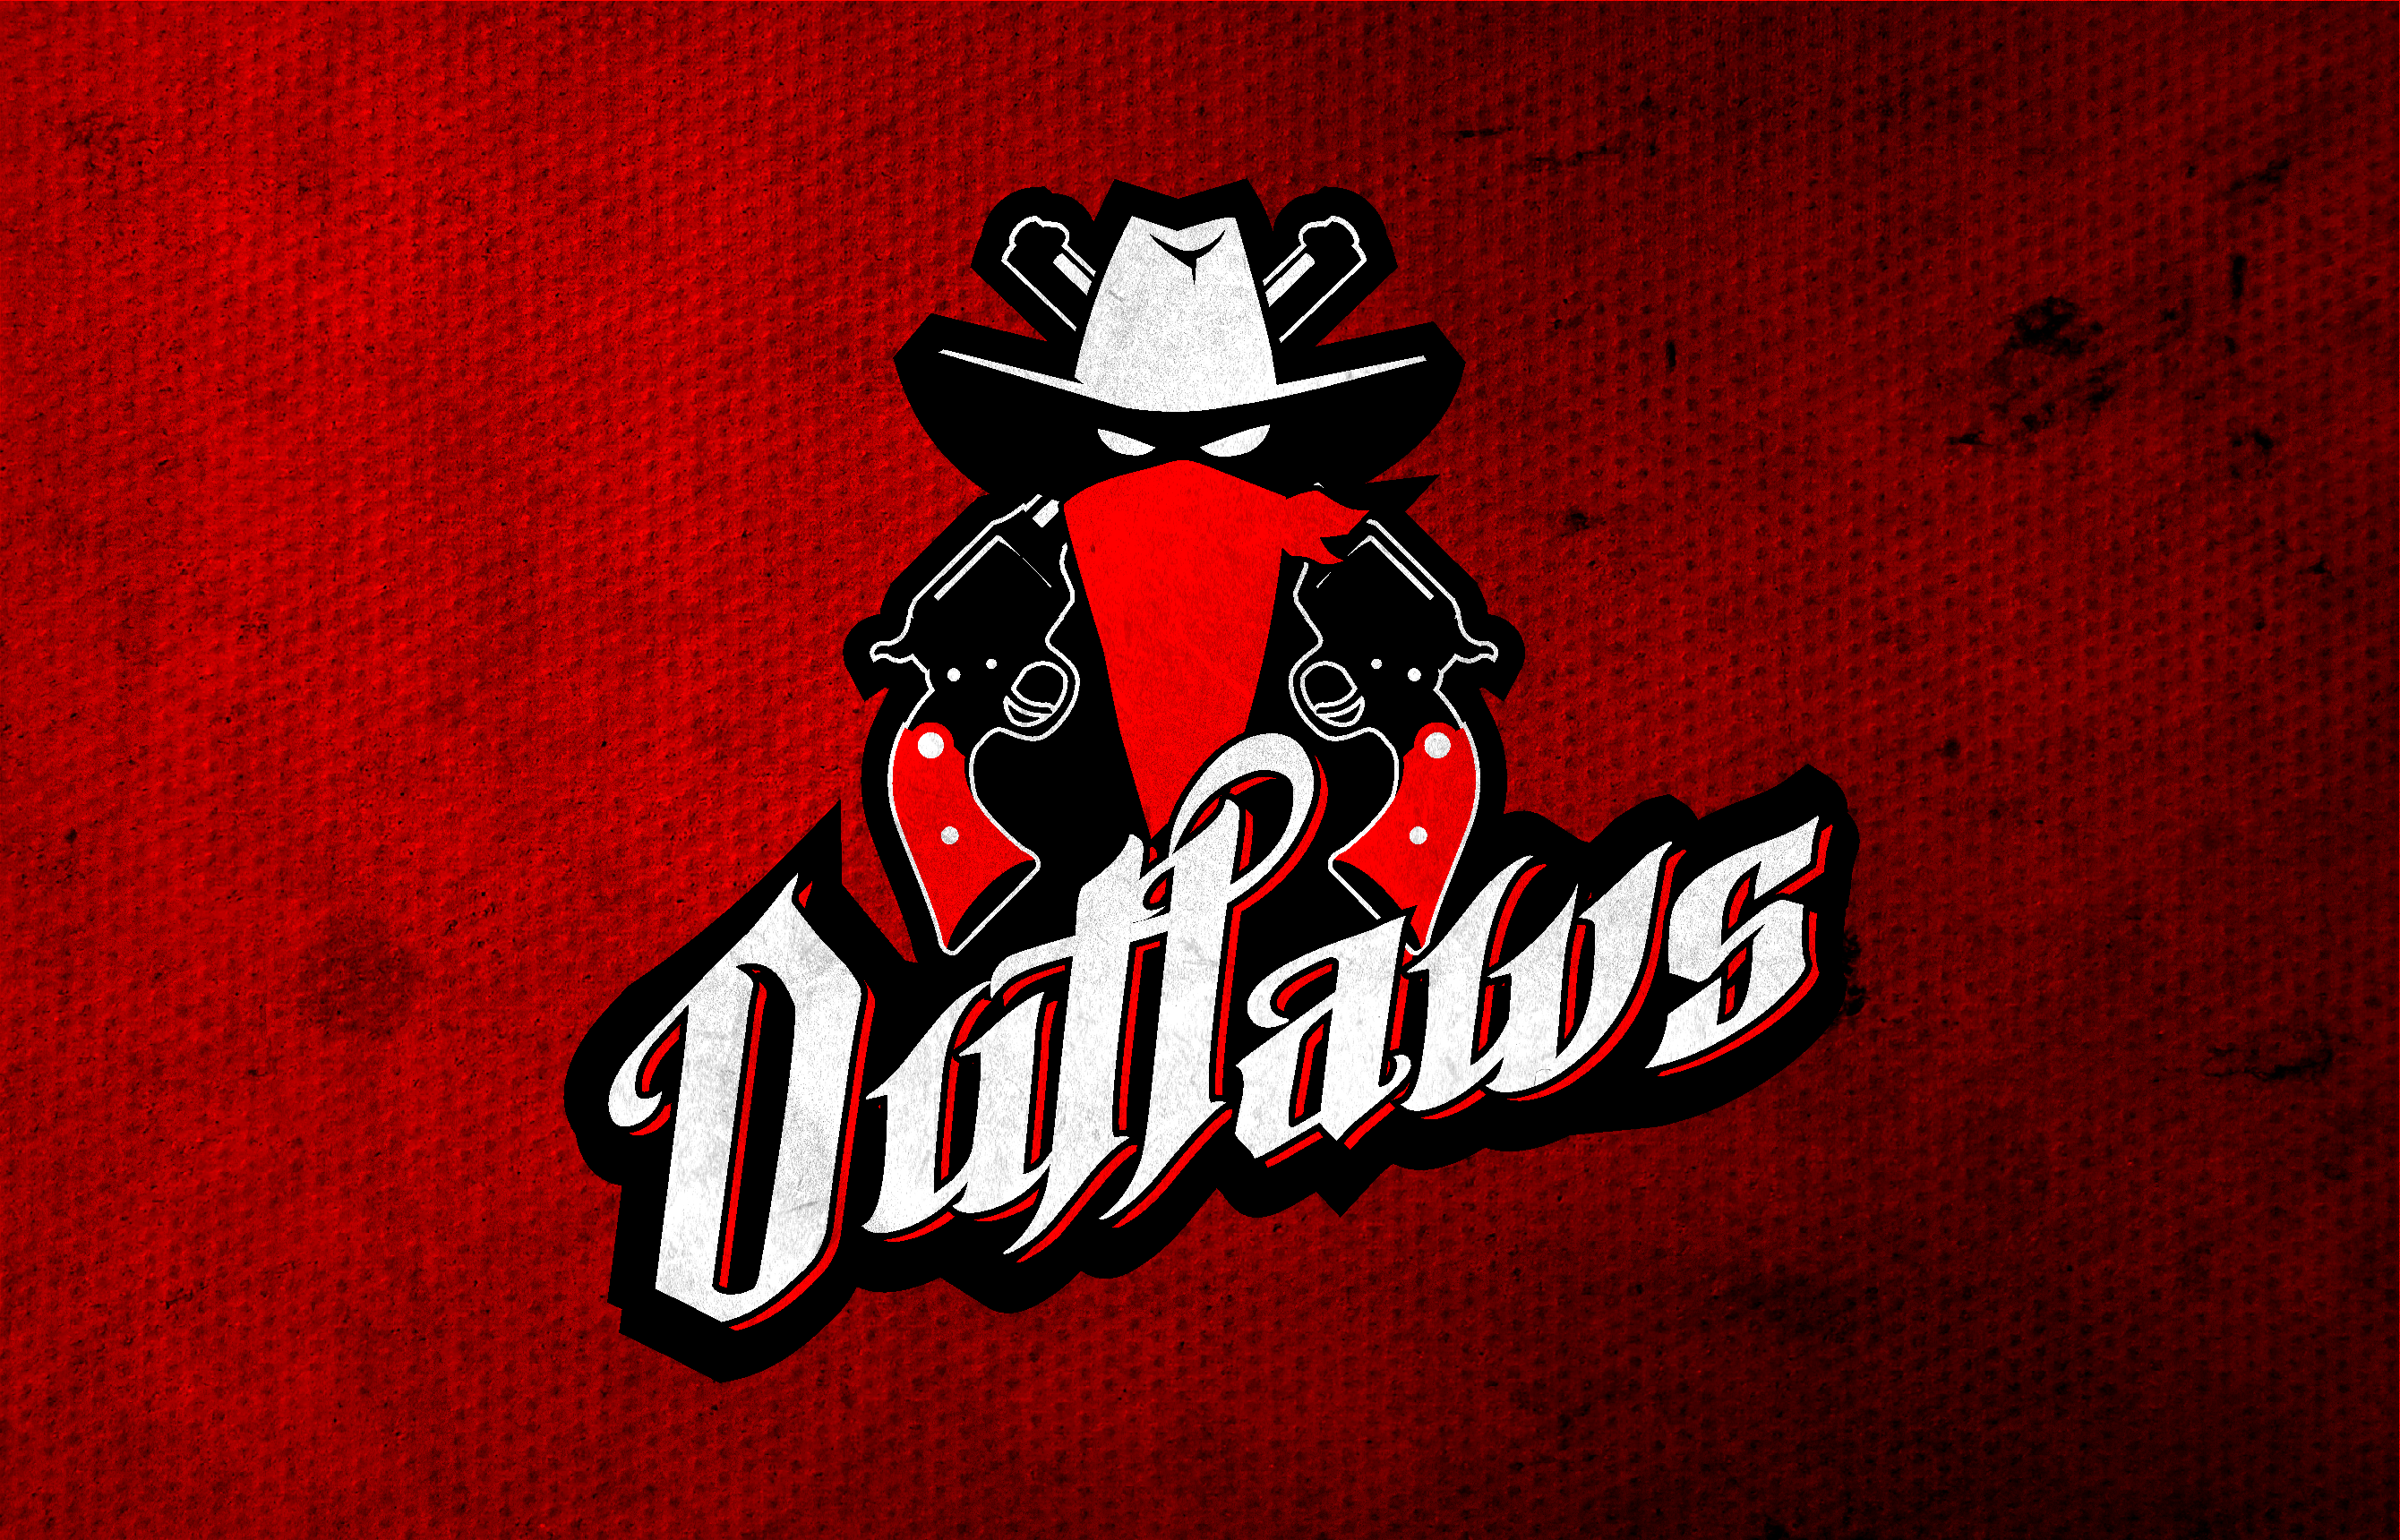 Outlaws Logo - Outlaws Logo. outlaws baseball club